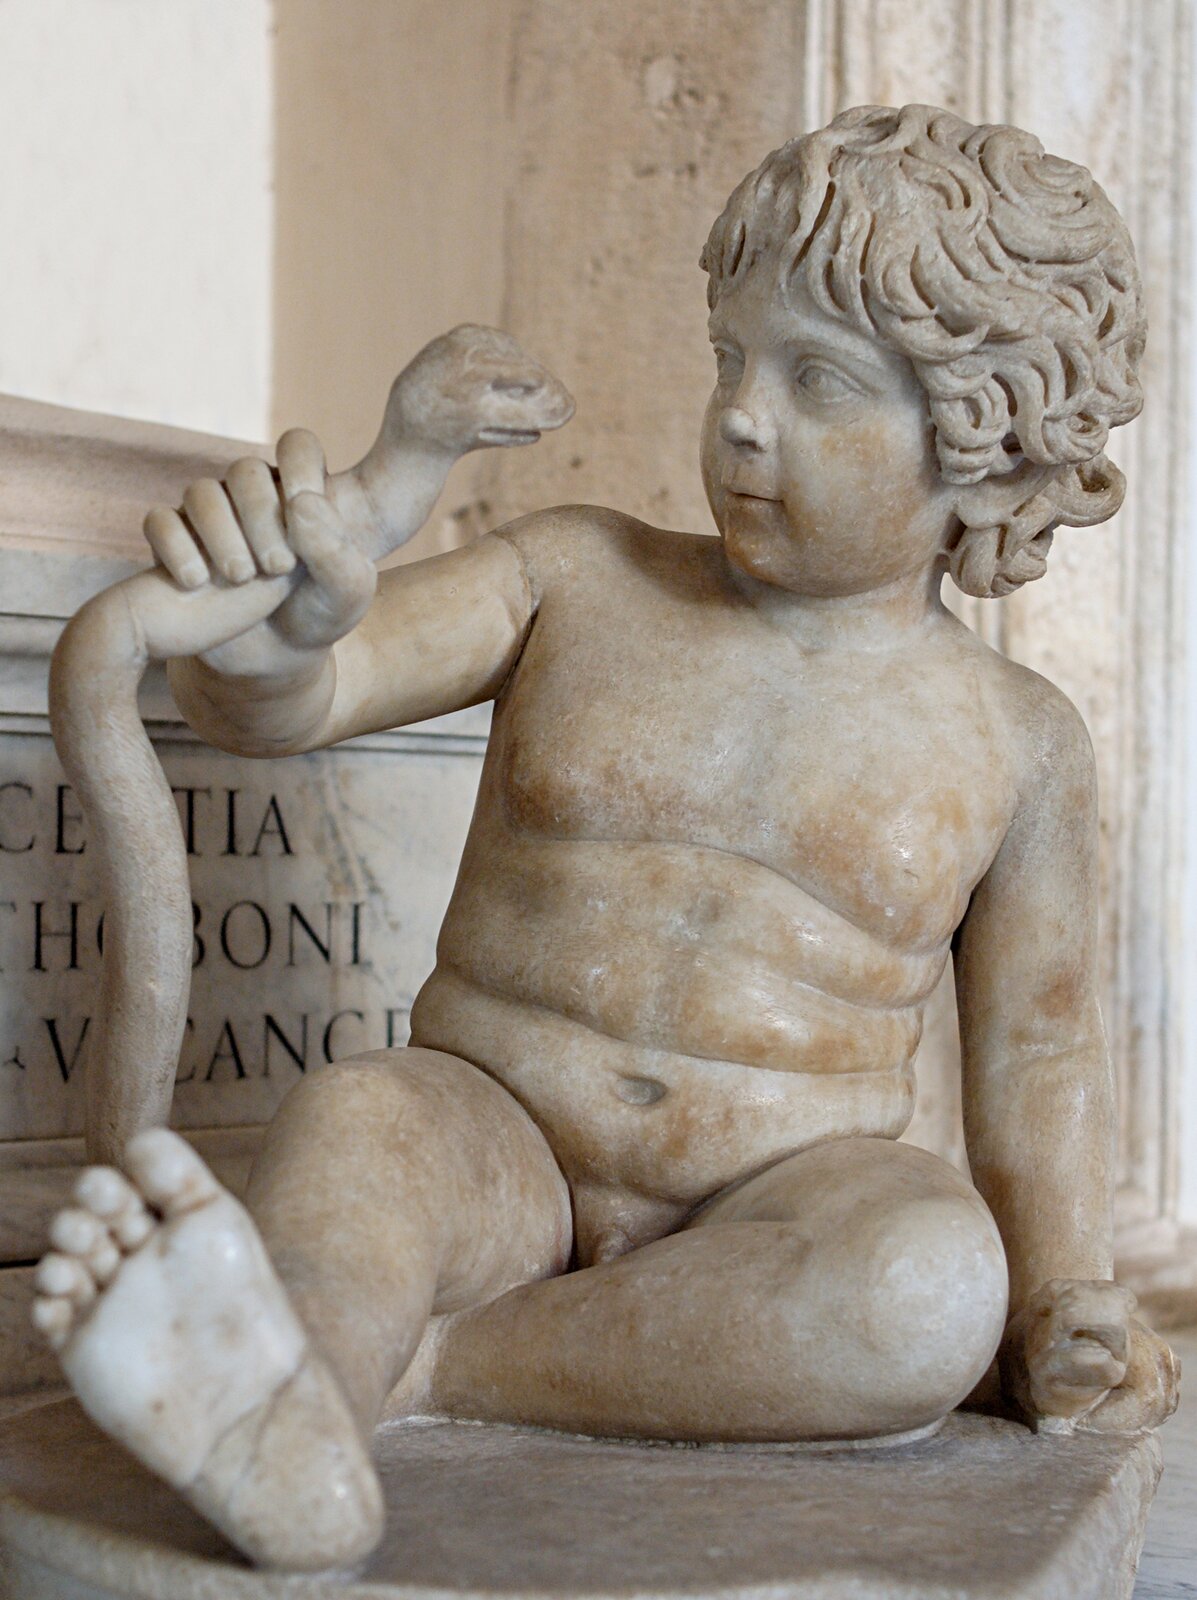 Rzeźba nieznanego autora wykonana została z jasnego kamienia. Przedstawia Herkulesa pokazanego jako małego, nagiego chłopca o kręconych włosach. Jedną dłonią opiera się o podłożę, a drugą trzyma i poddusza węża. W tle widoczne są ściany oraz łacińska inskrypcja. 